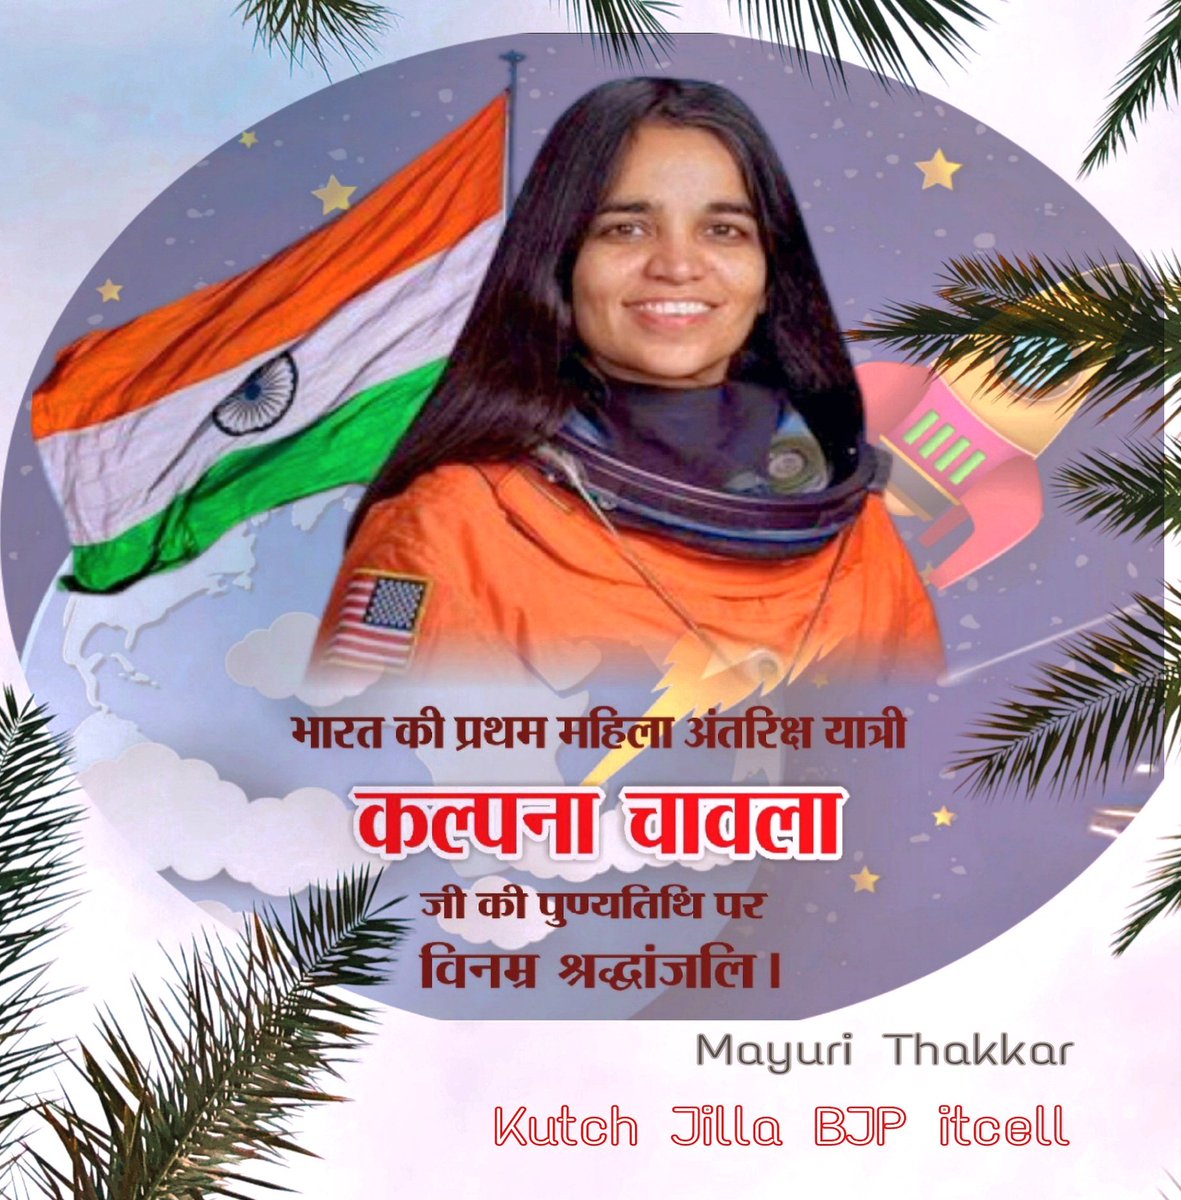 #कल्पनाचावला 
अंतरिक्ष के अनंत आकाश तक देश का मान, सम्मान और गौरव बढ़ाने वाली, नारी सशक्तिकरण की मिसाल, अंतरिक्ष पर कदम रखने वाली प्रथम भारतीय महिला कल्पना चावला जी को पुण्यतिथि पर विनम्र श्रद्धांजलि।🙏
#KalpanaChawla